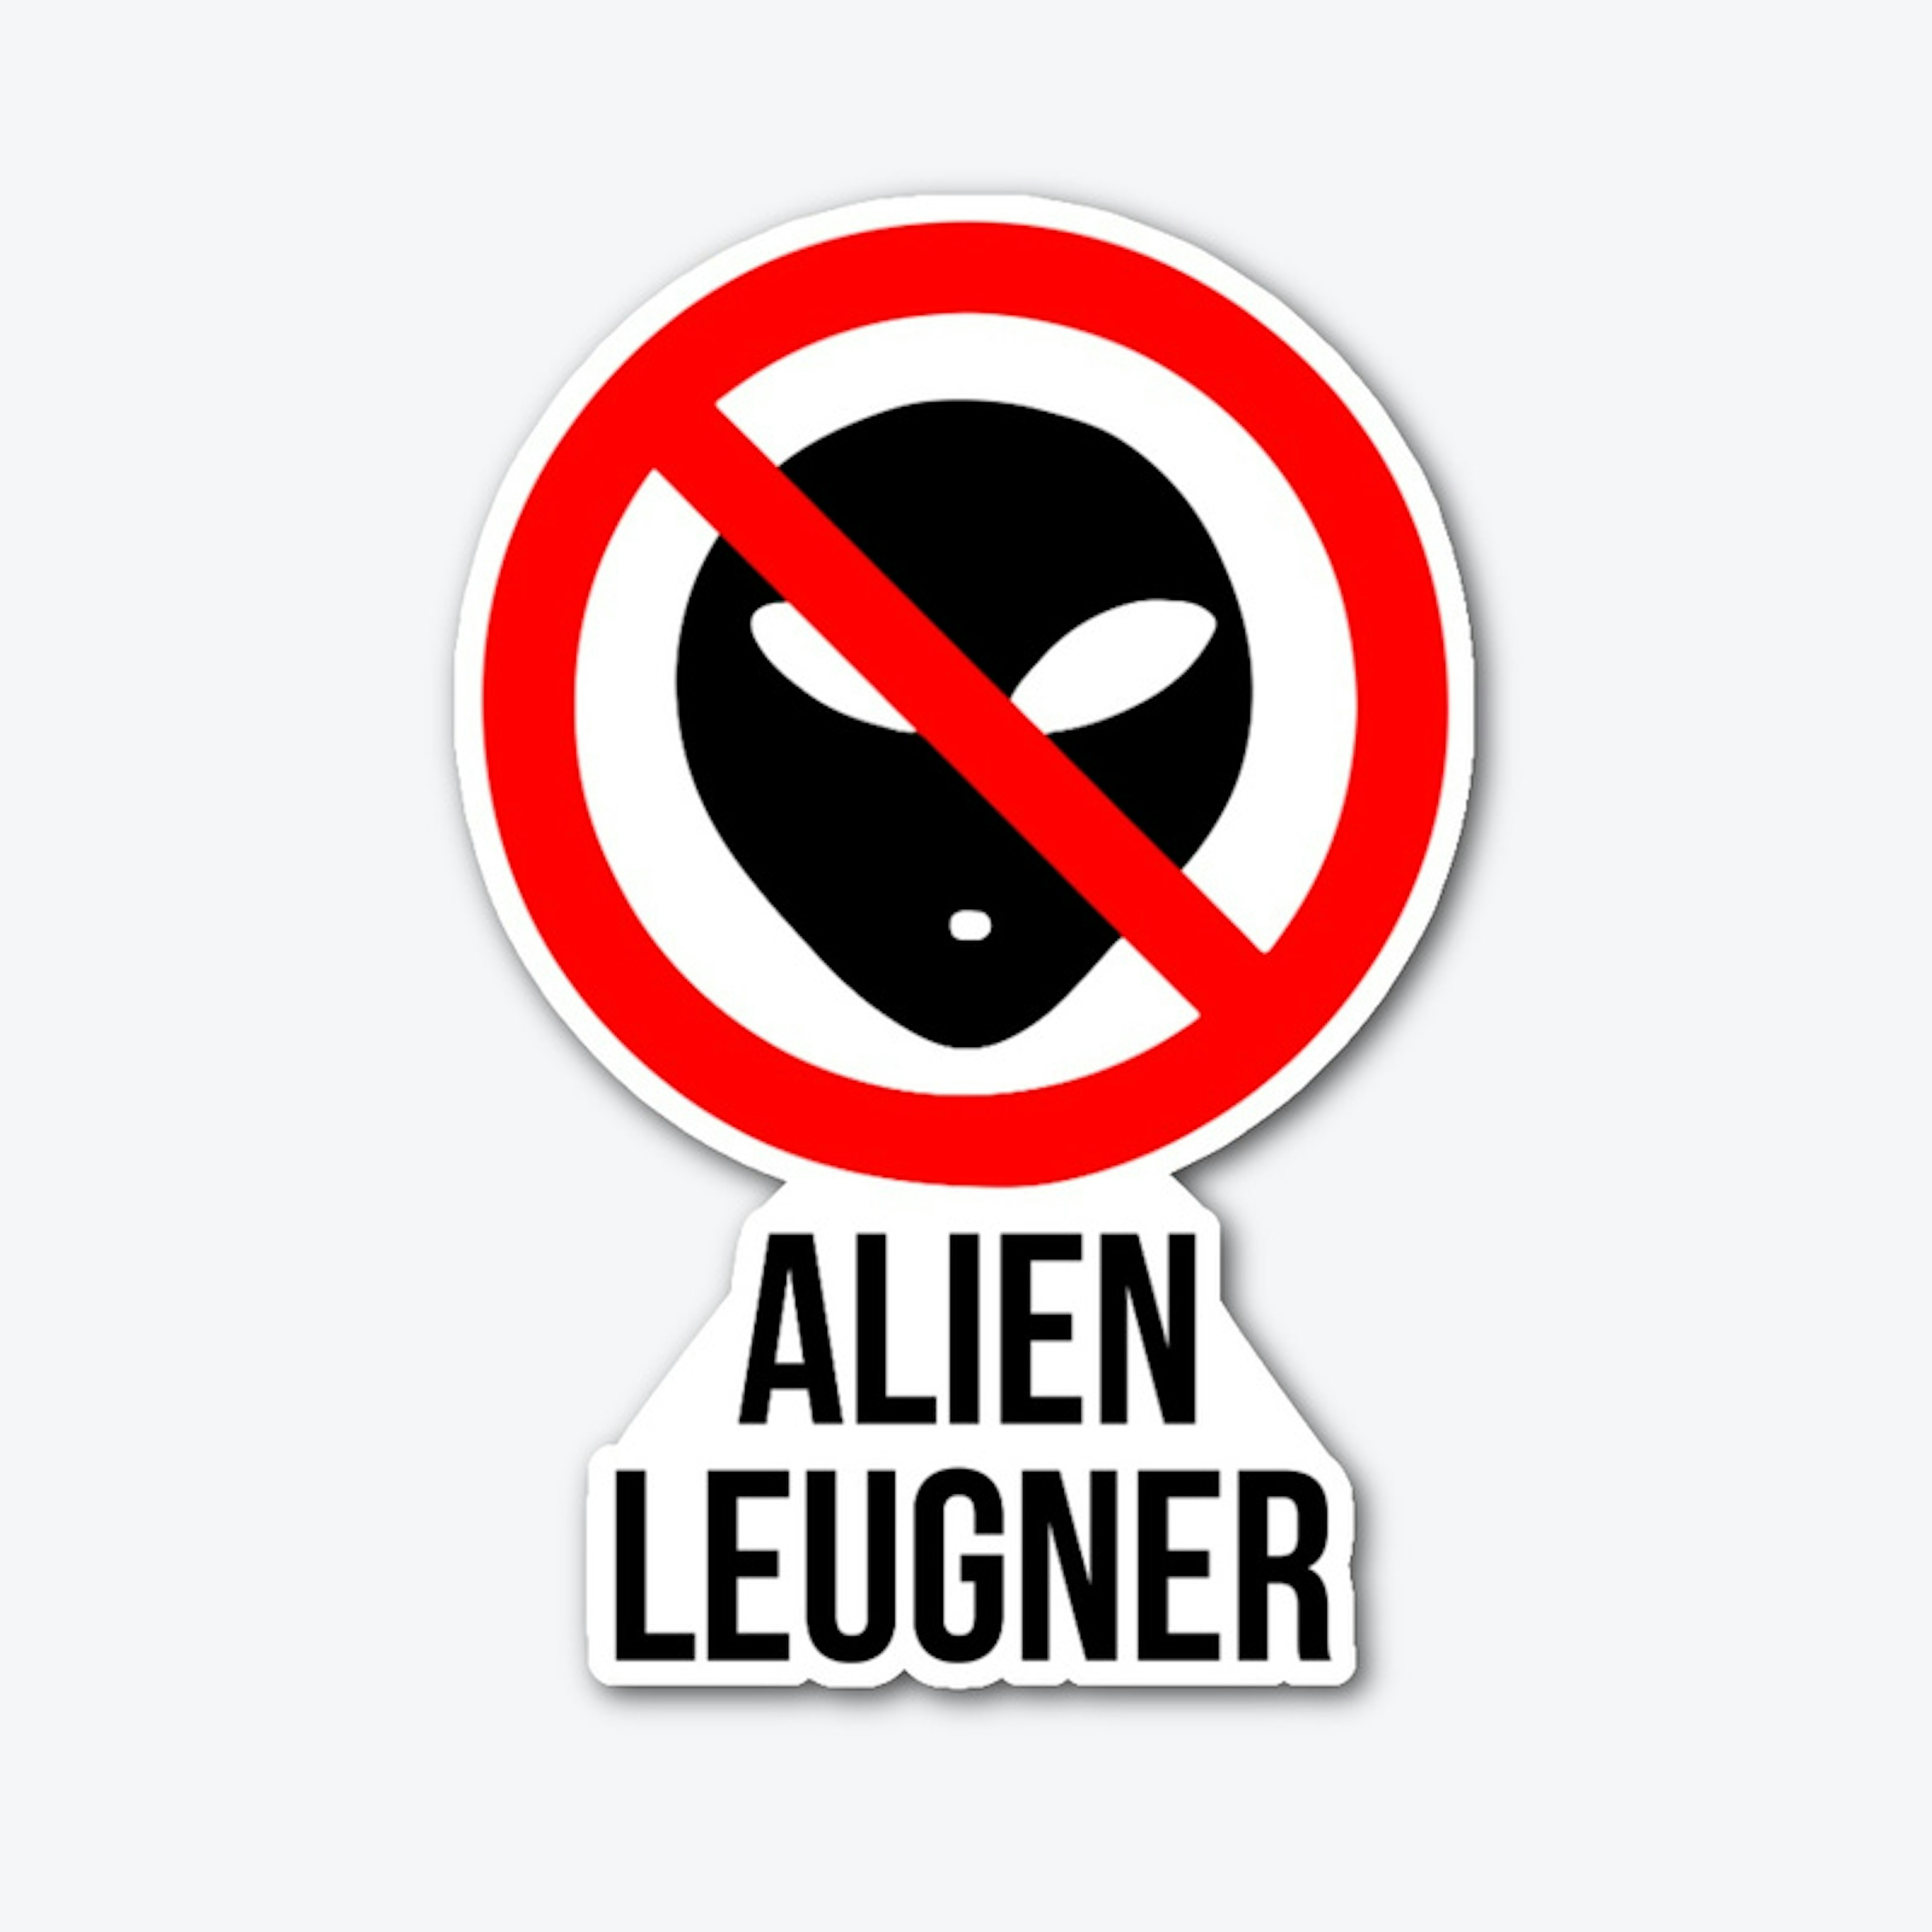 Alien Leugner